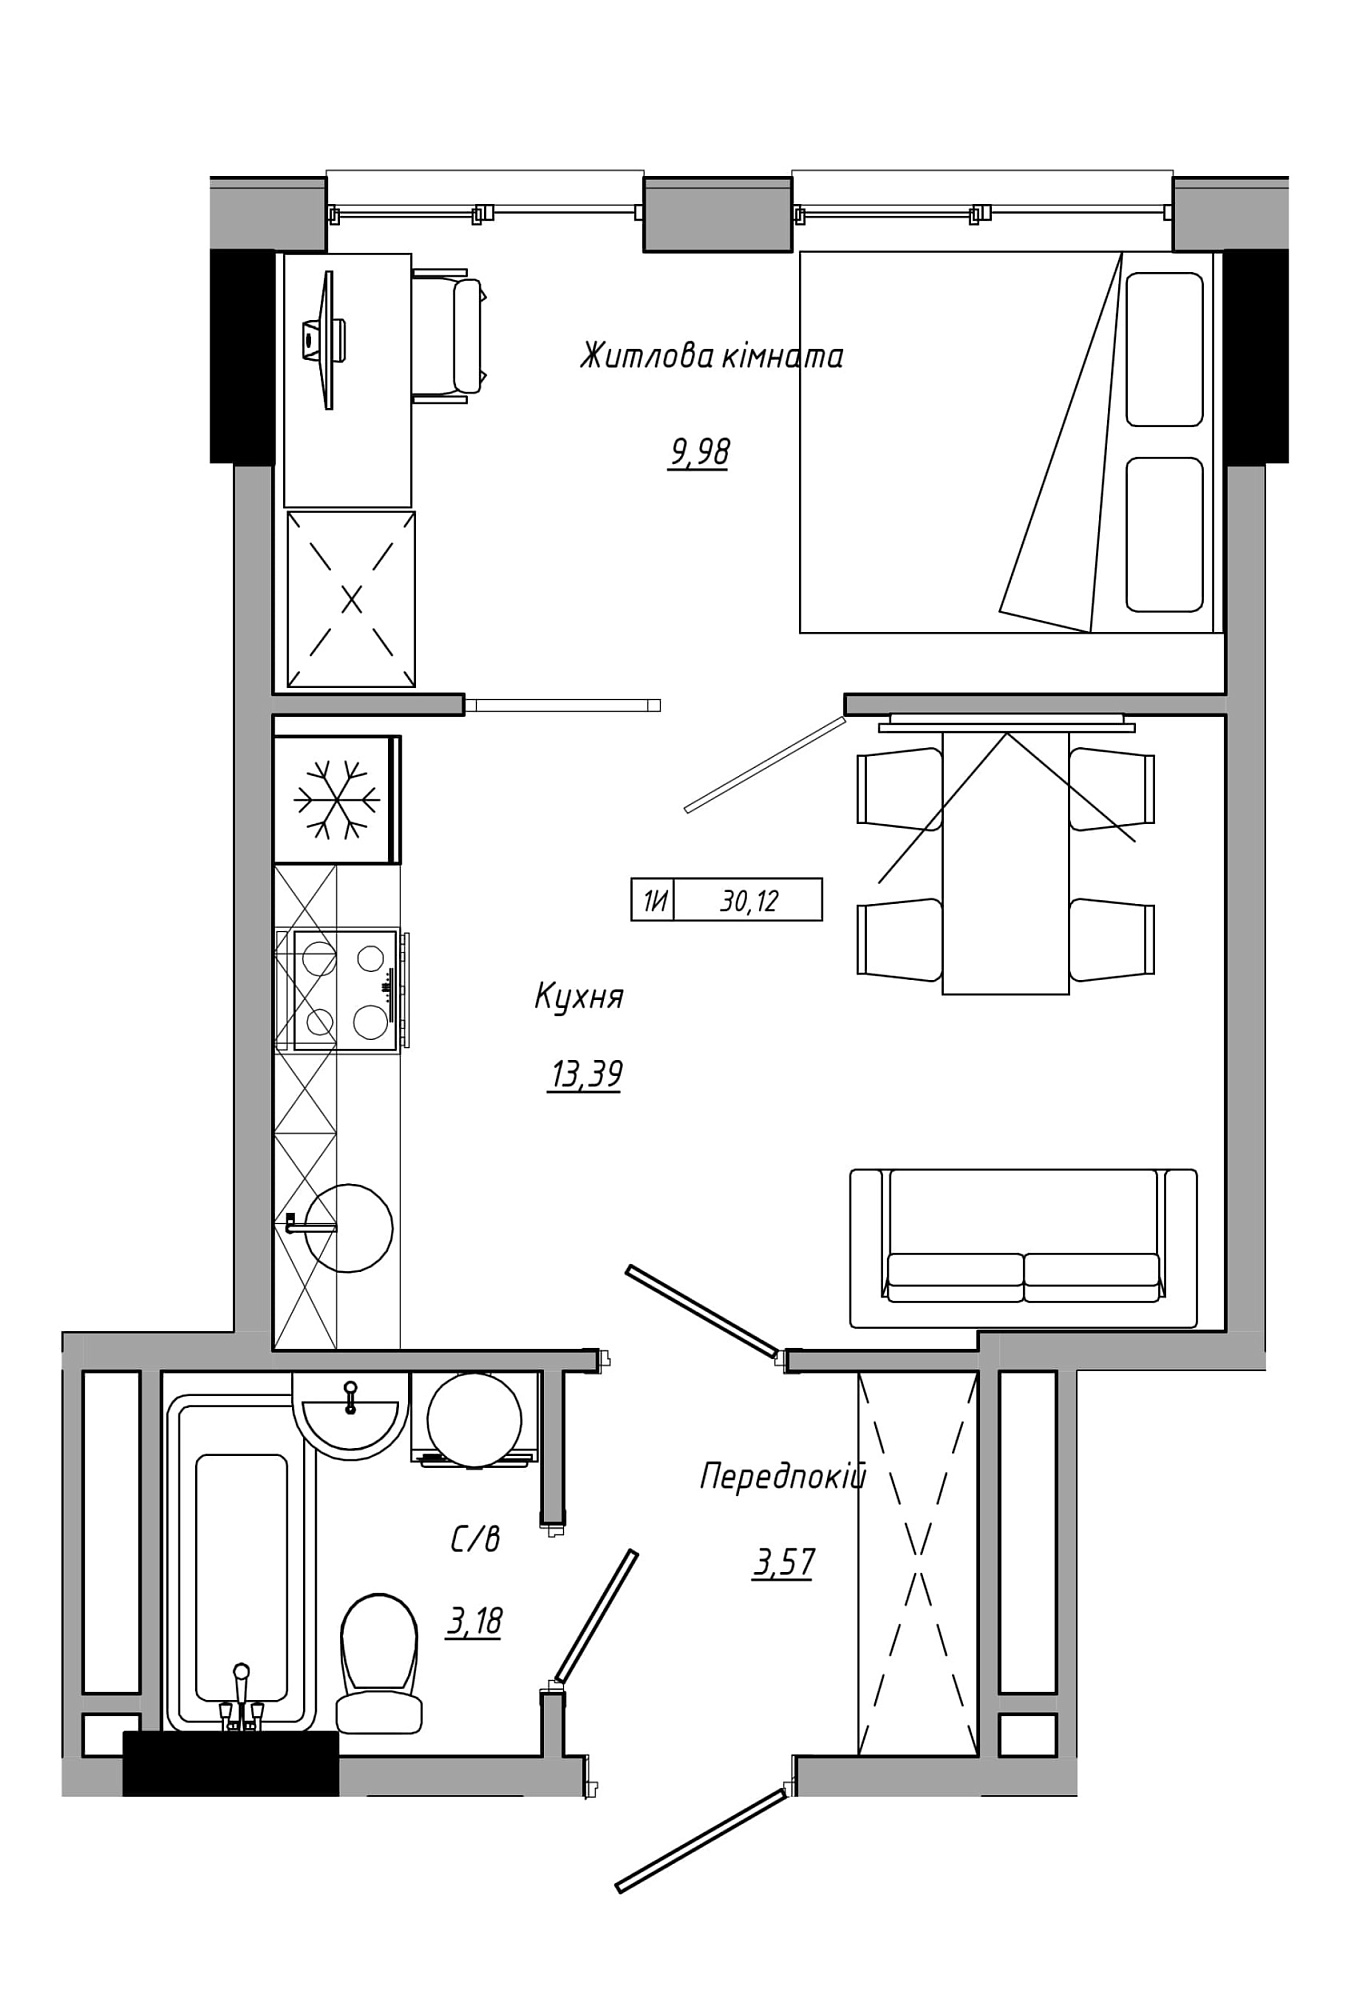 Планировка 1-к квартира площей 30.12м2, AB-21-14/00112.